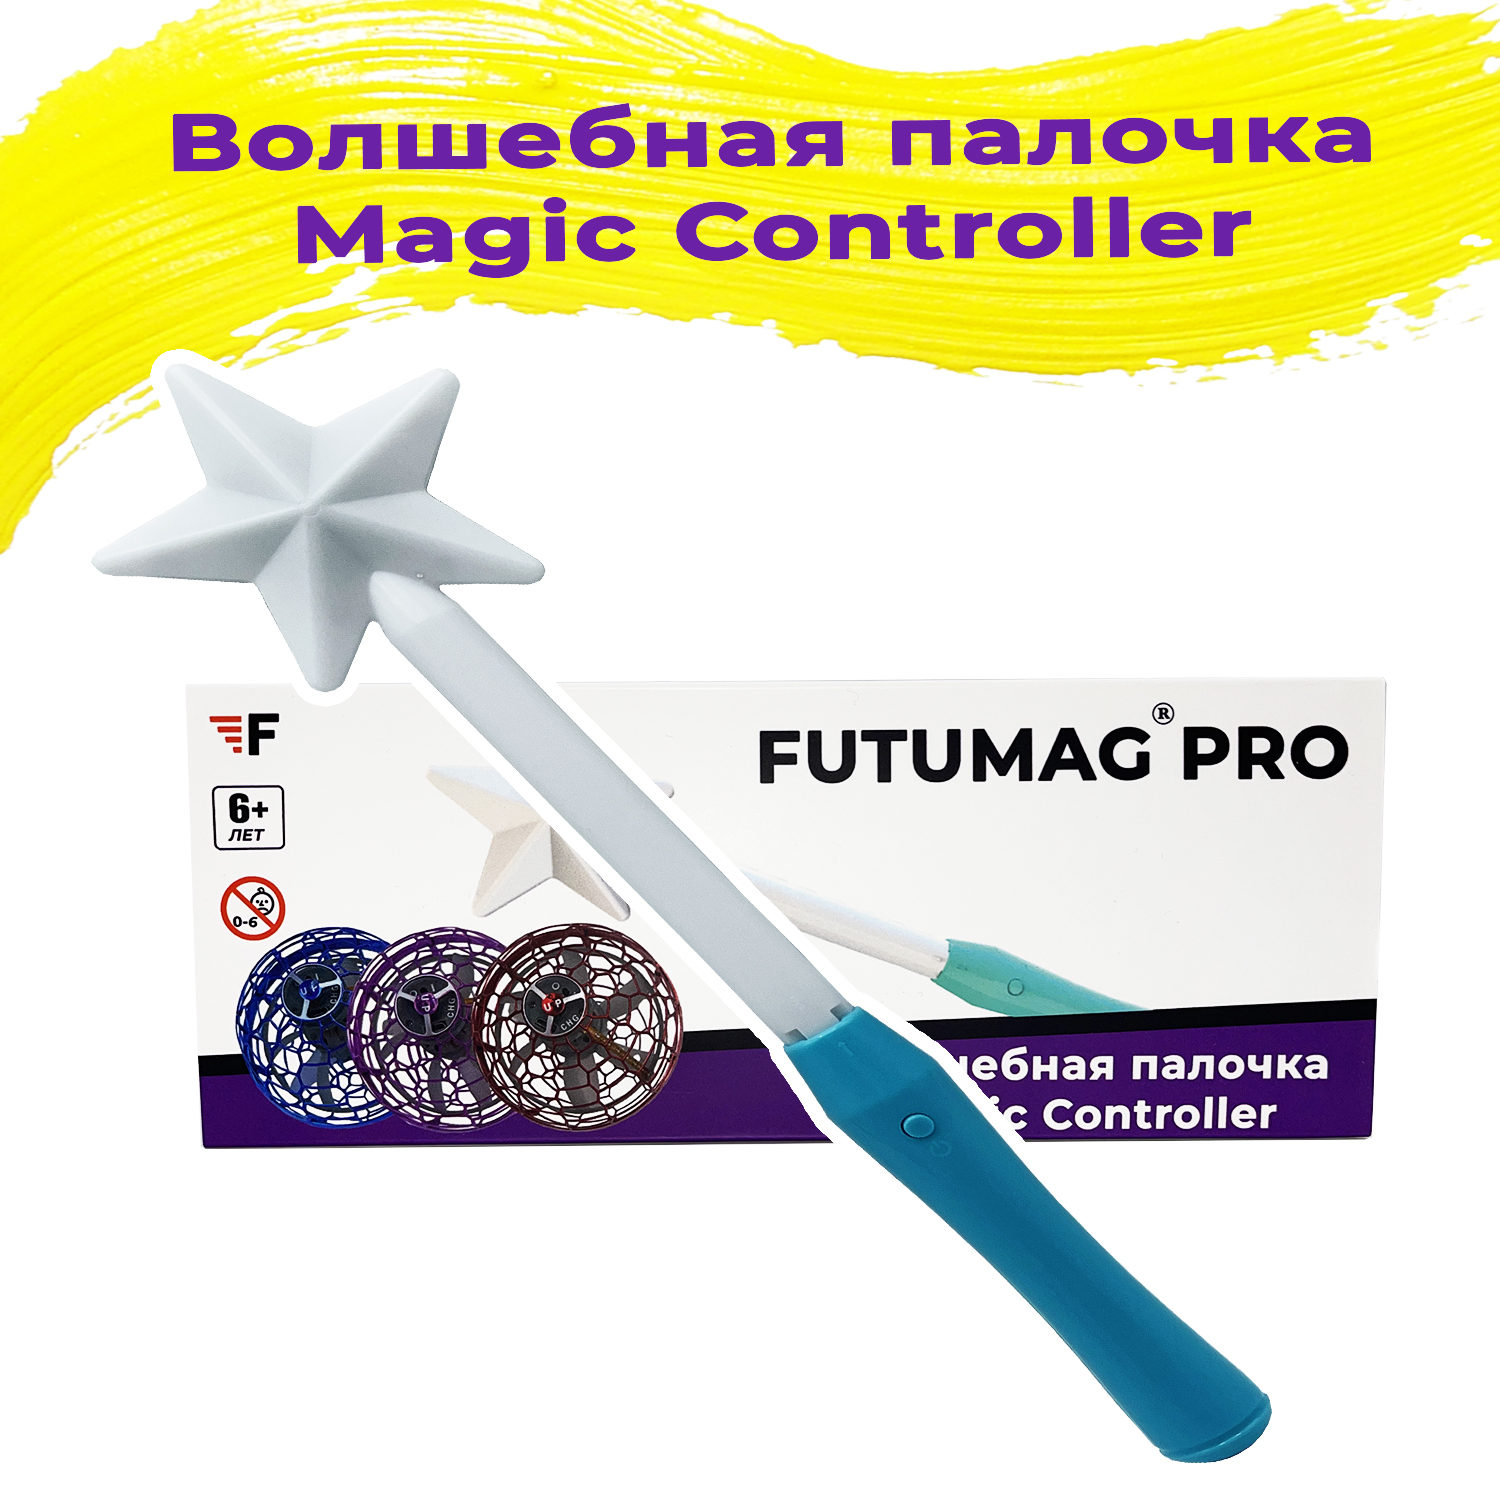 Волшебная палочка Magic Controller для летающего спиннера бумеранга FUTUMAG PRO - характерист...